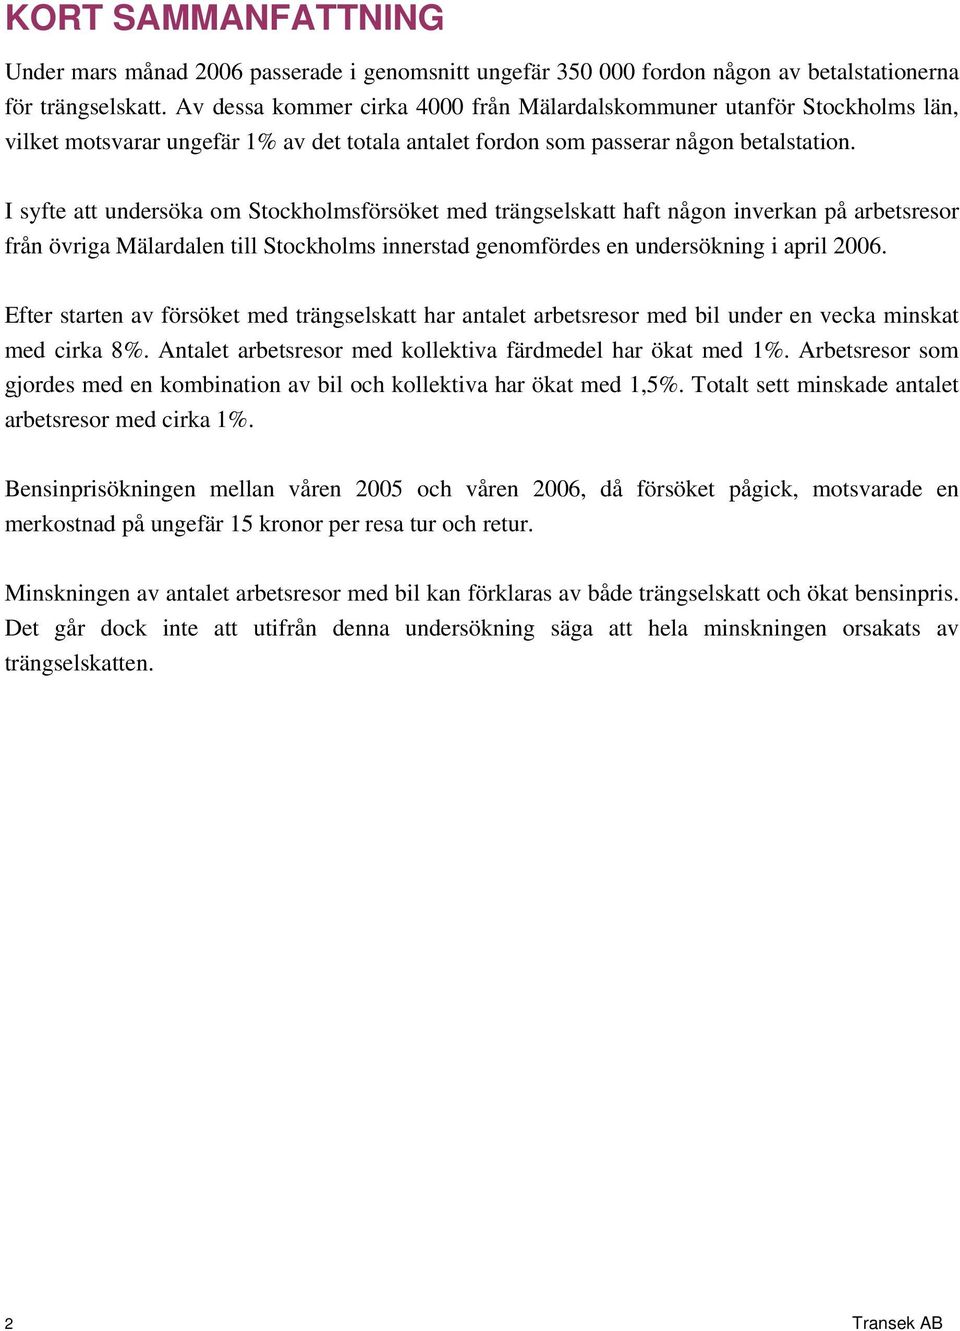 I syfte att undersöka om Stockholmsförsöket med trängselskatt haft någon inverkan på arbetsresor från övriga Mälardalen till Stockholms innerstad genomfördes en undersökning i april 2006.